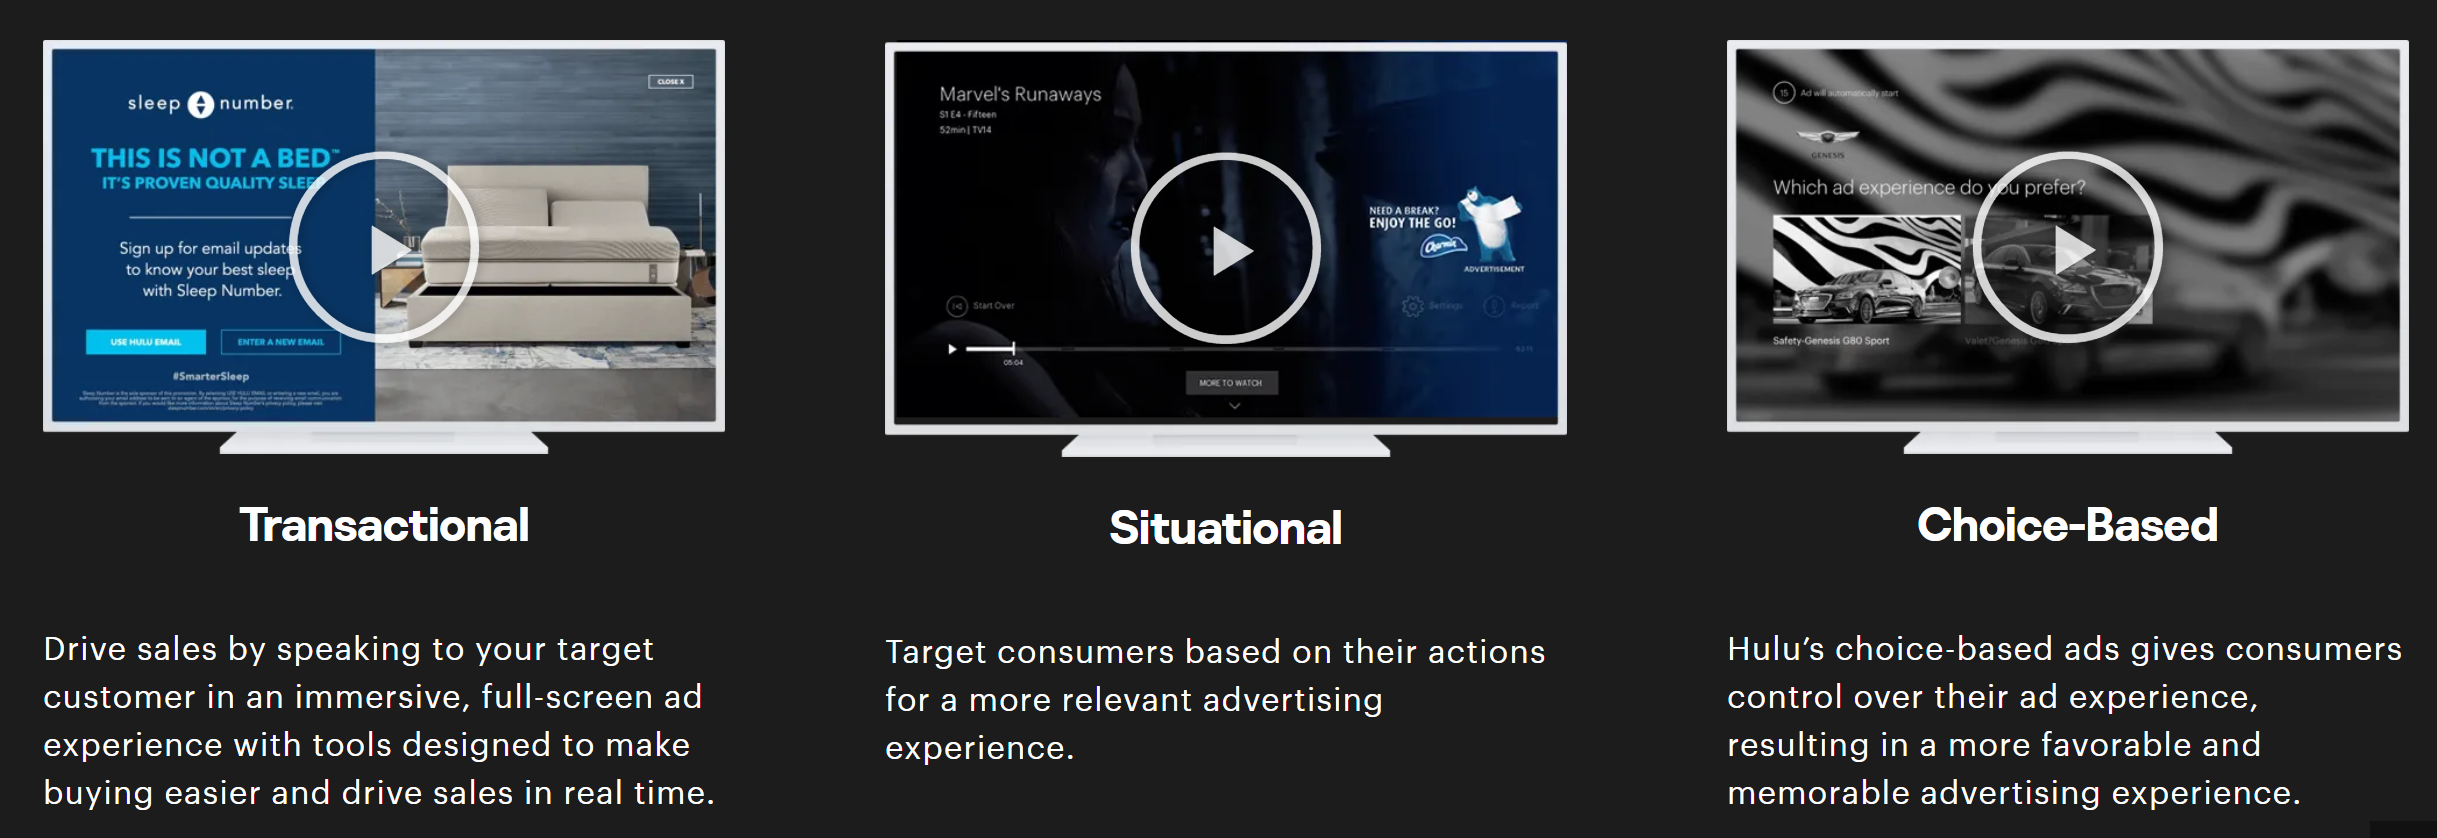 three types of hulu advertising targeting - transactional, situational, choice-based